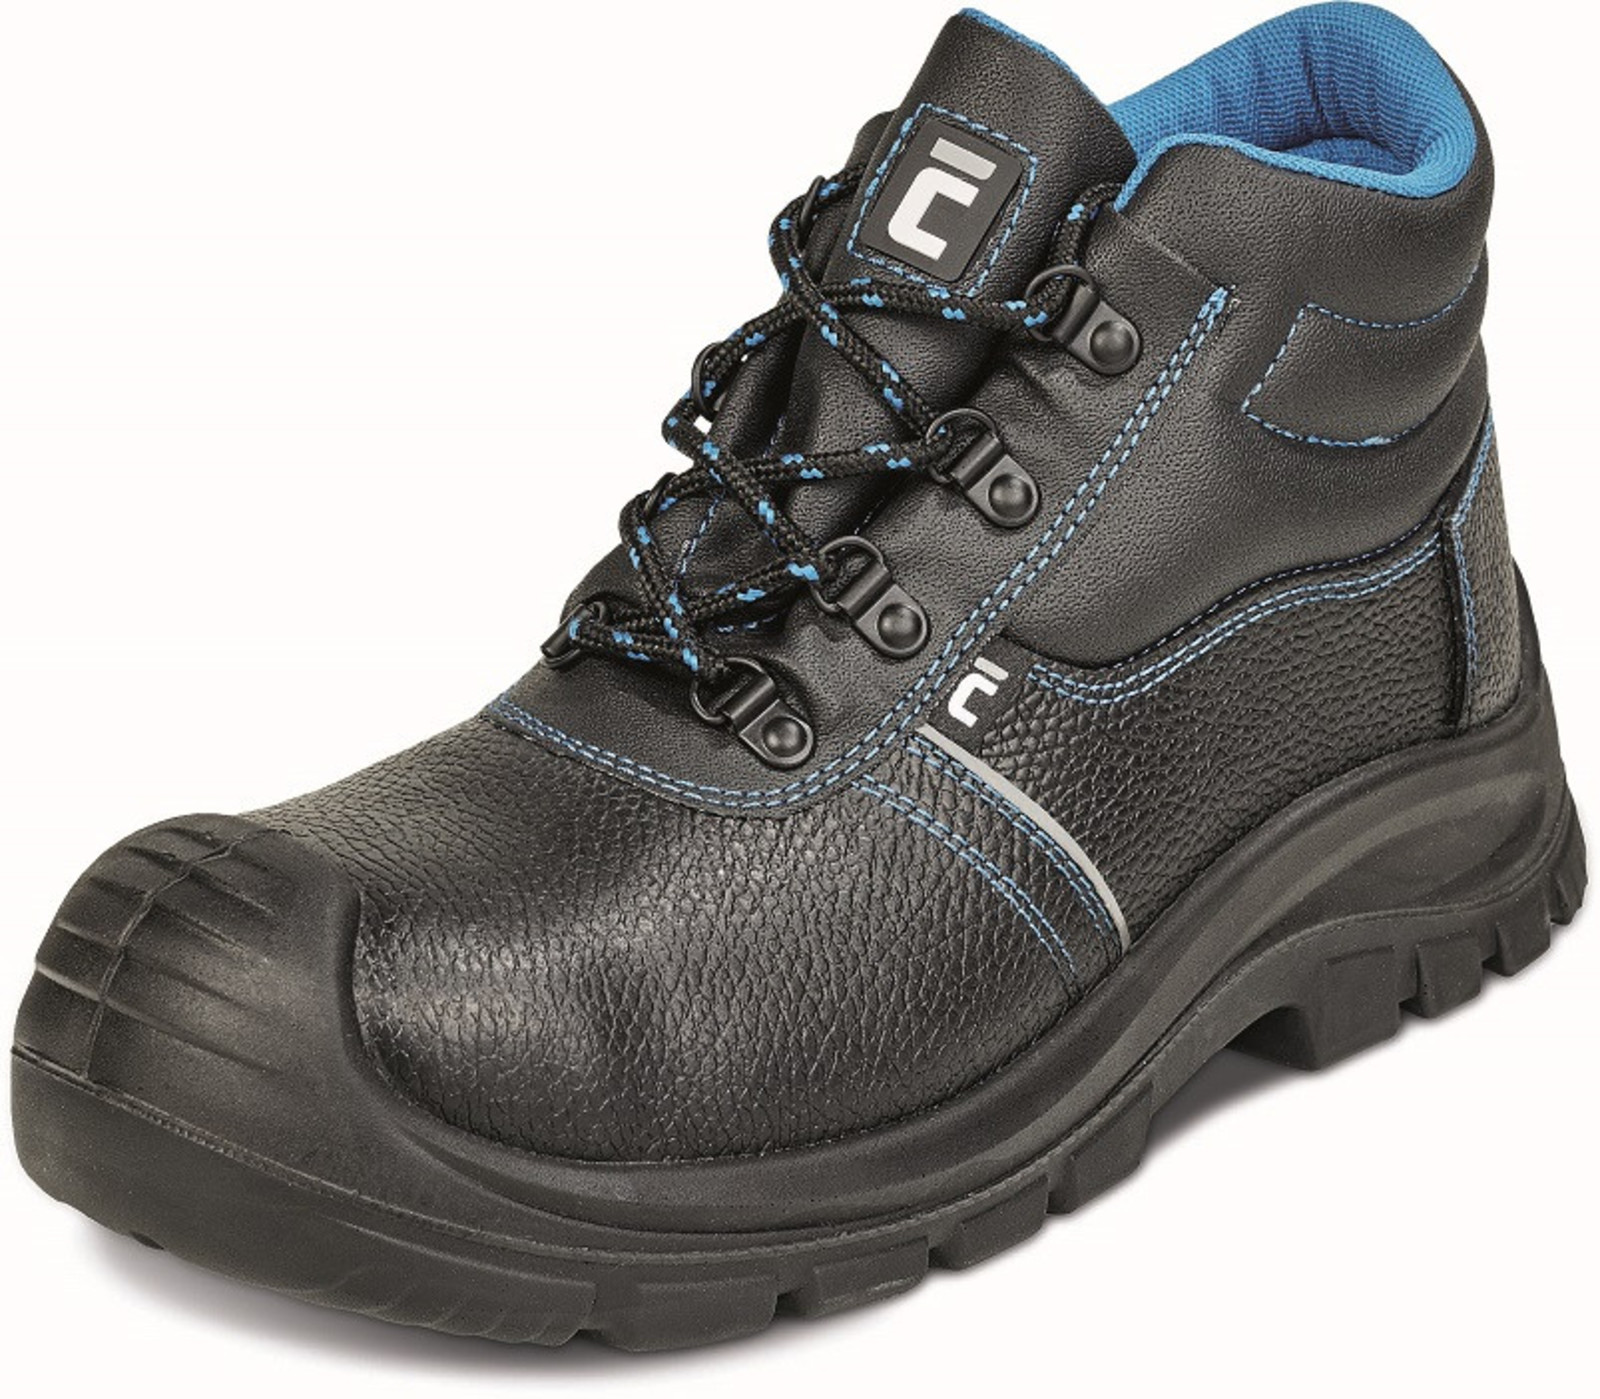 Bezpečnostná obuv Raven XT S3 - veľkosť: 50, farba: čierna